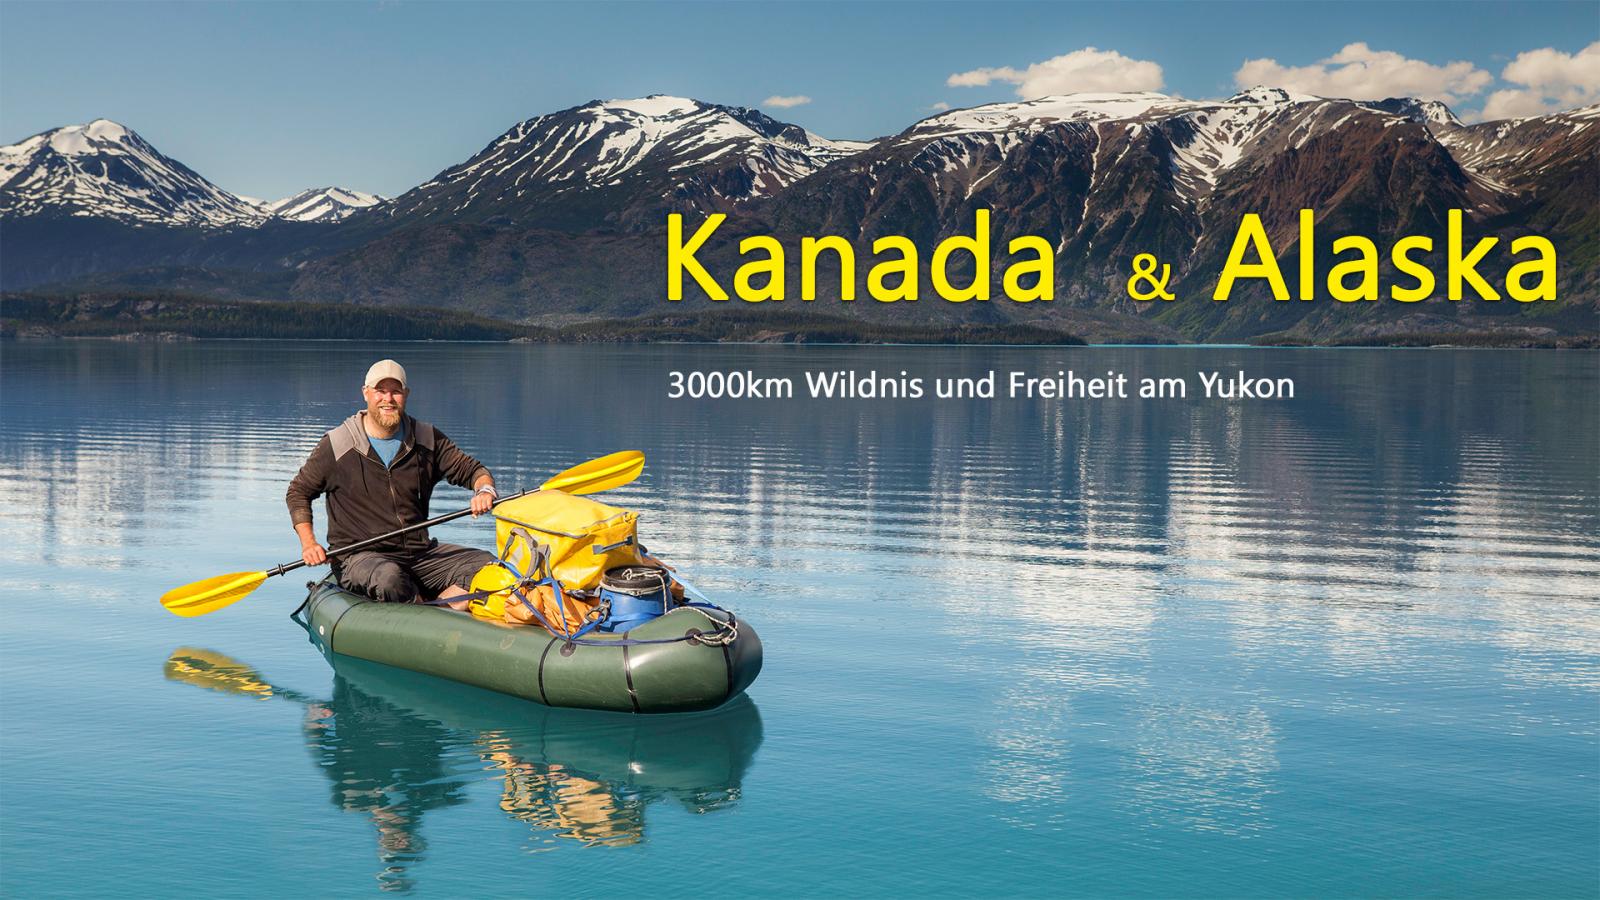 Kanada und Alaska – 3000km Wildnis und Freiheit am Yukon